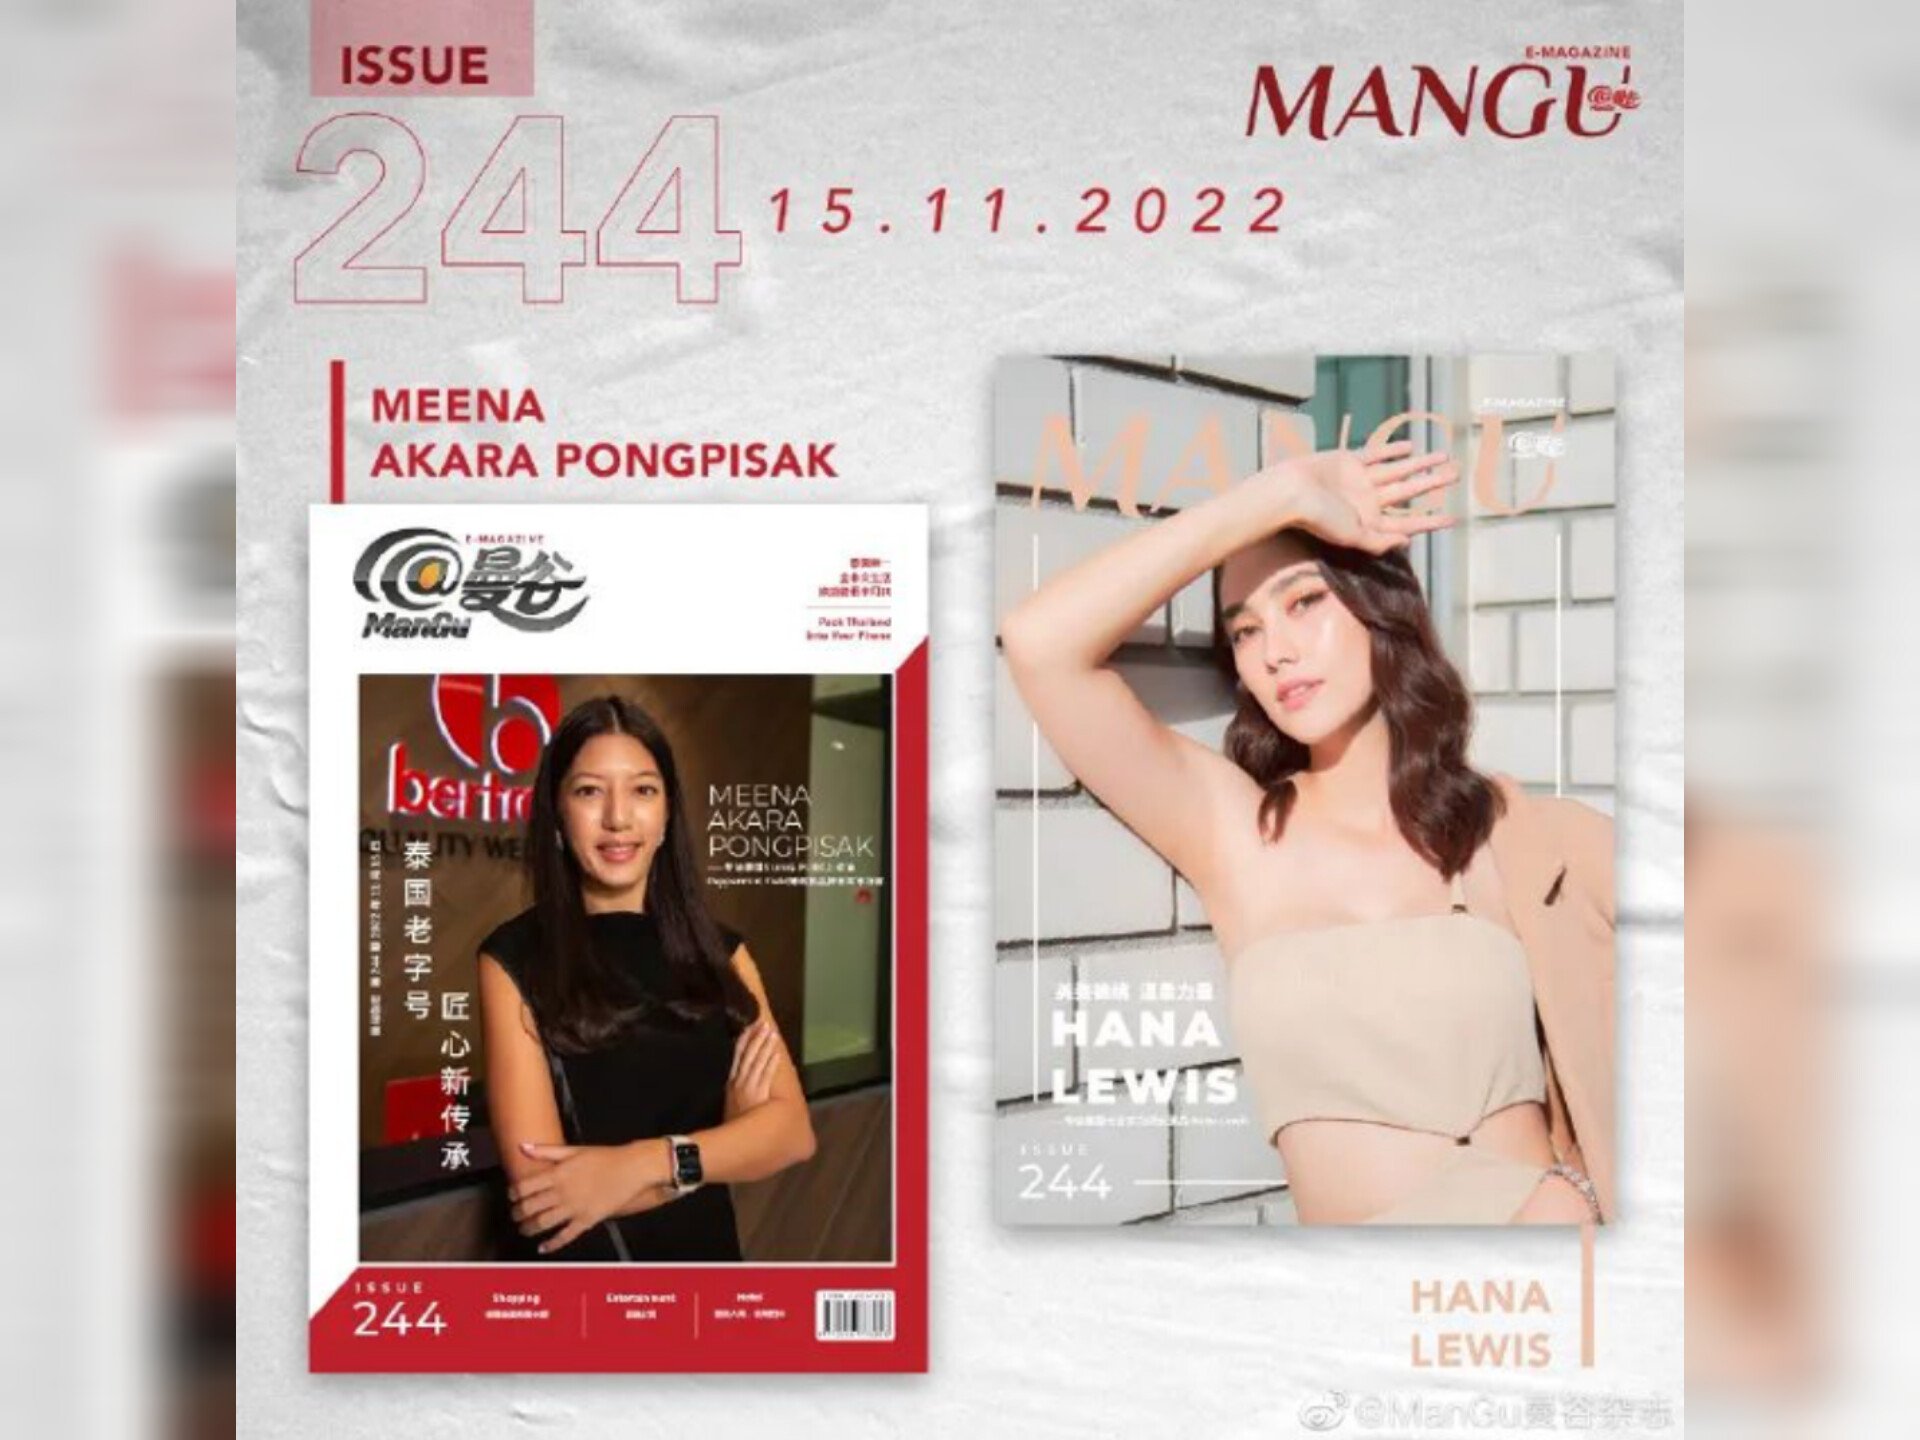 คุณมีนา อัครา พงษ์พิศักดิ์ ประธานเจ้าหน้าที่ฝ่ายการตลาดของแบรนด์เจ้าเก่าของประเทศไทย และดาราสาว ฮาน่า ลีวิส จากนิตยสาร @ManGu Magazine